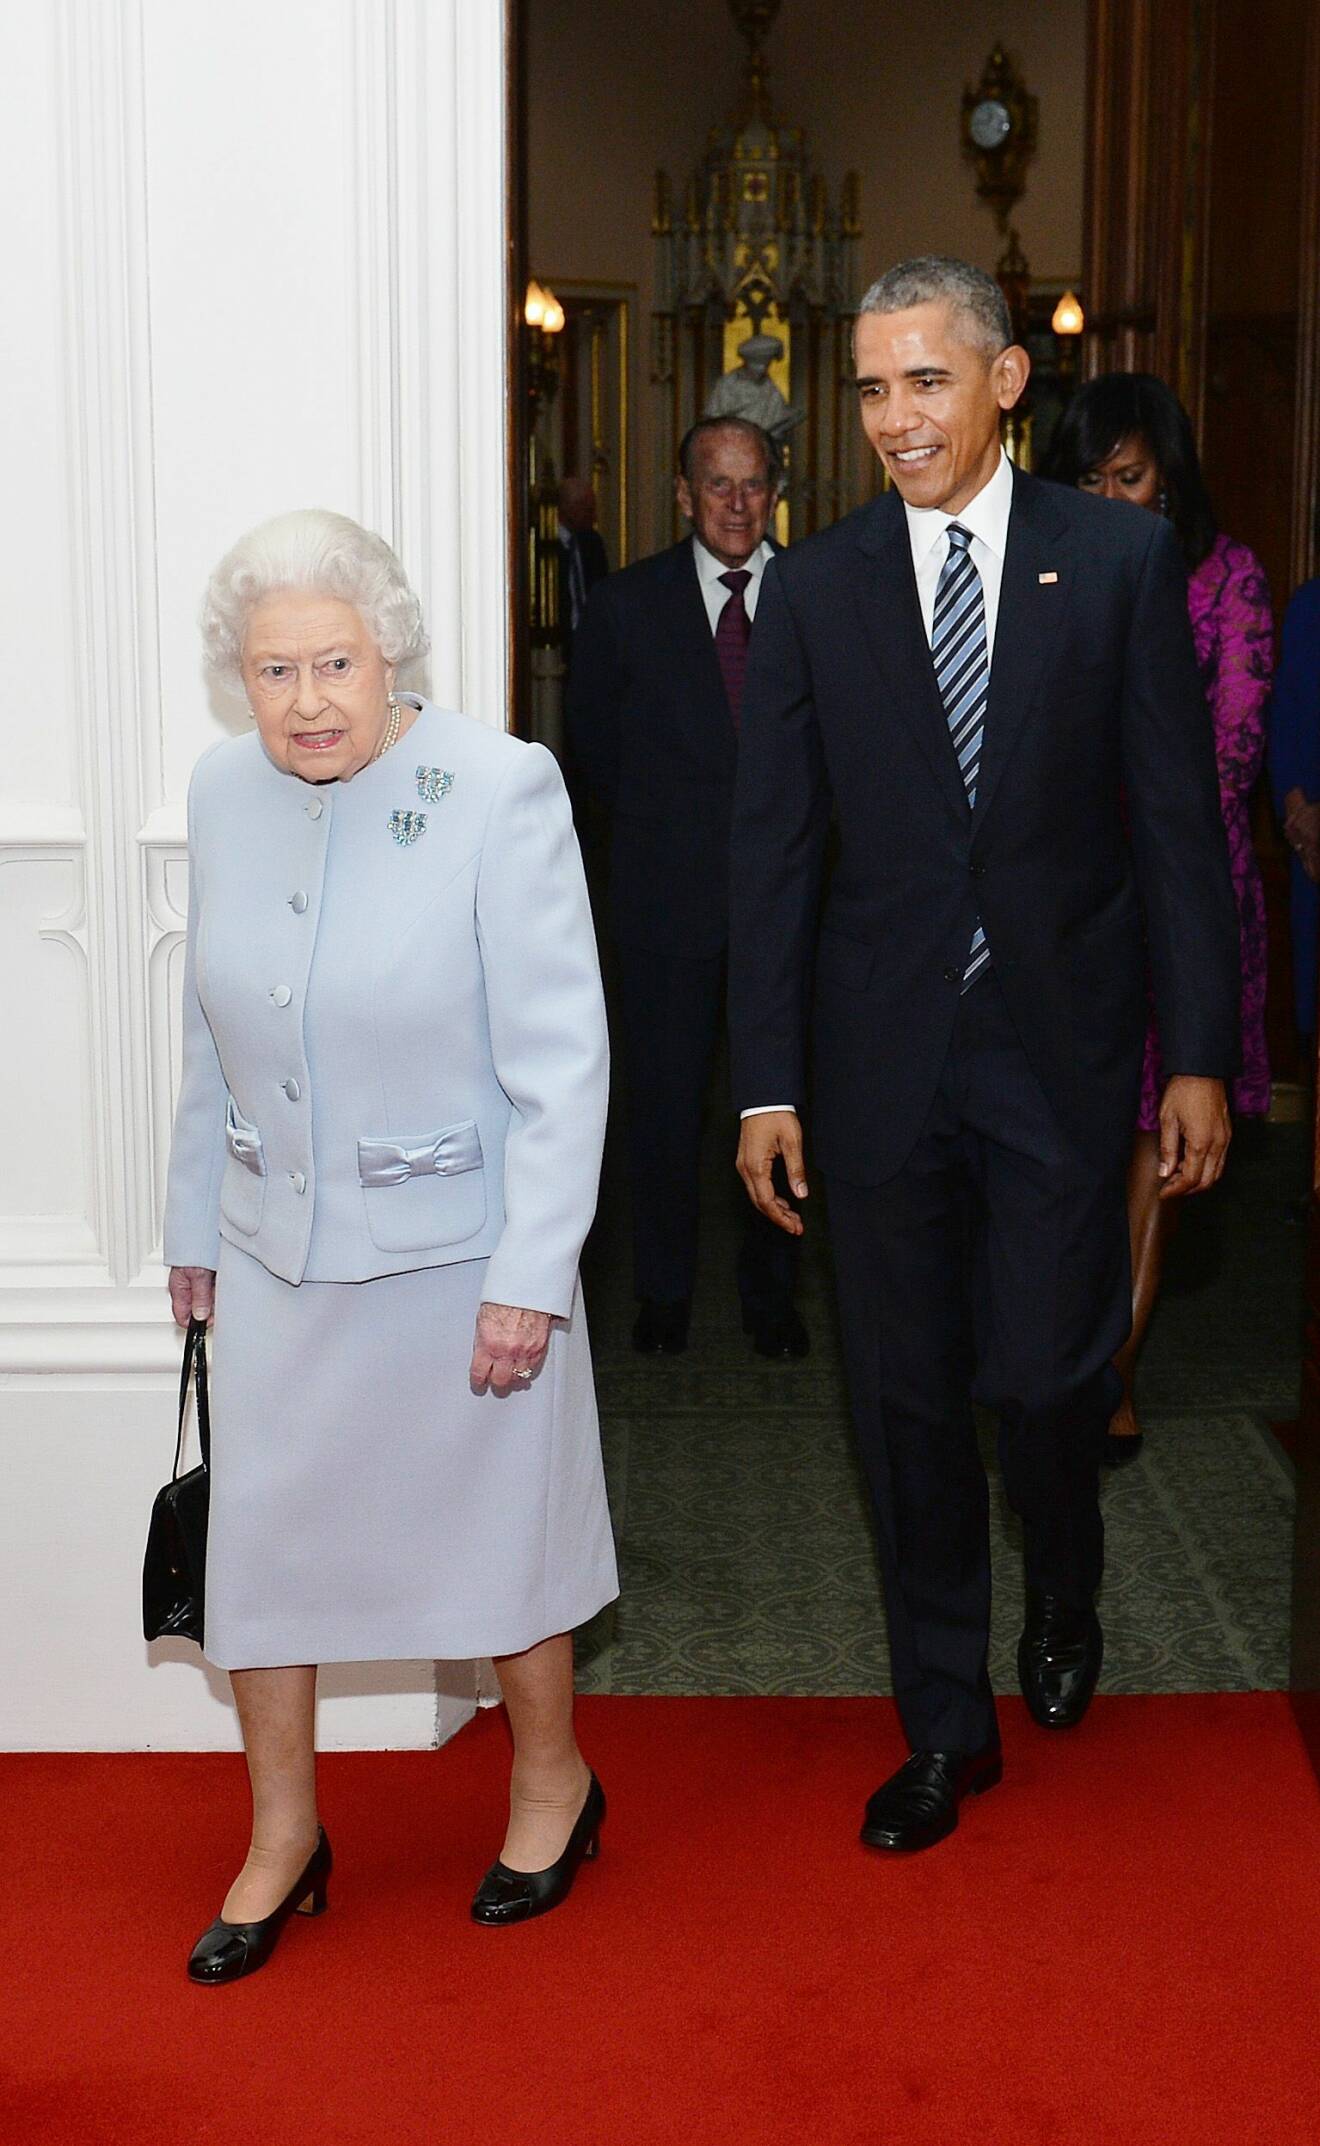 Drottning Elizabeth och Barack Obama